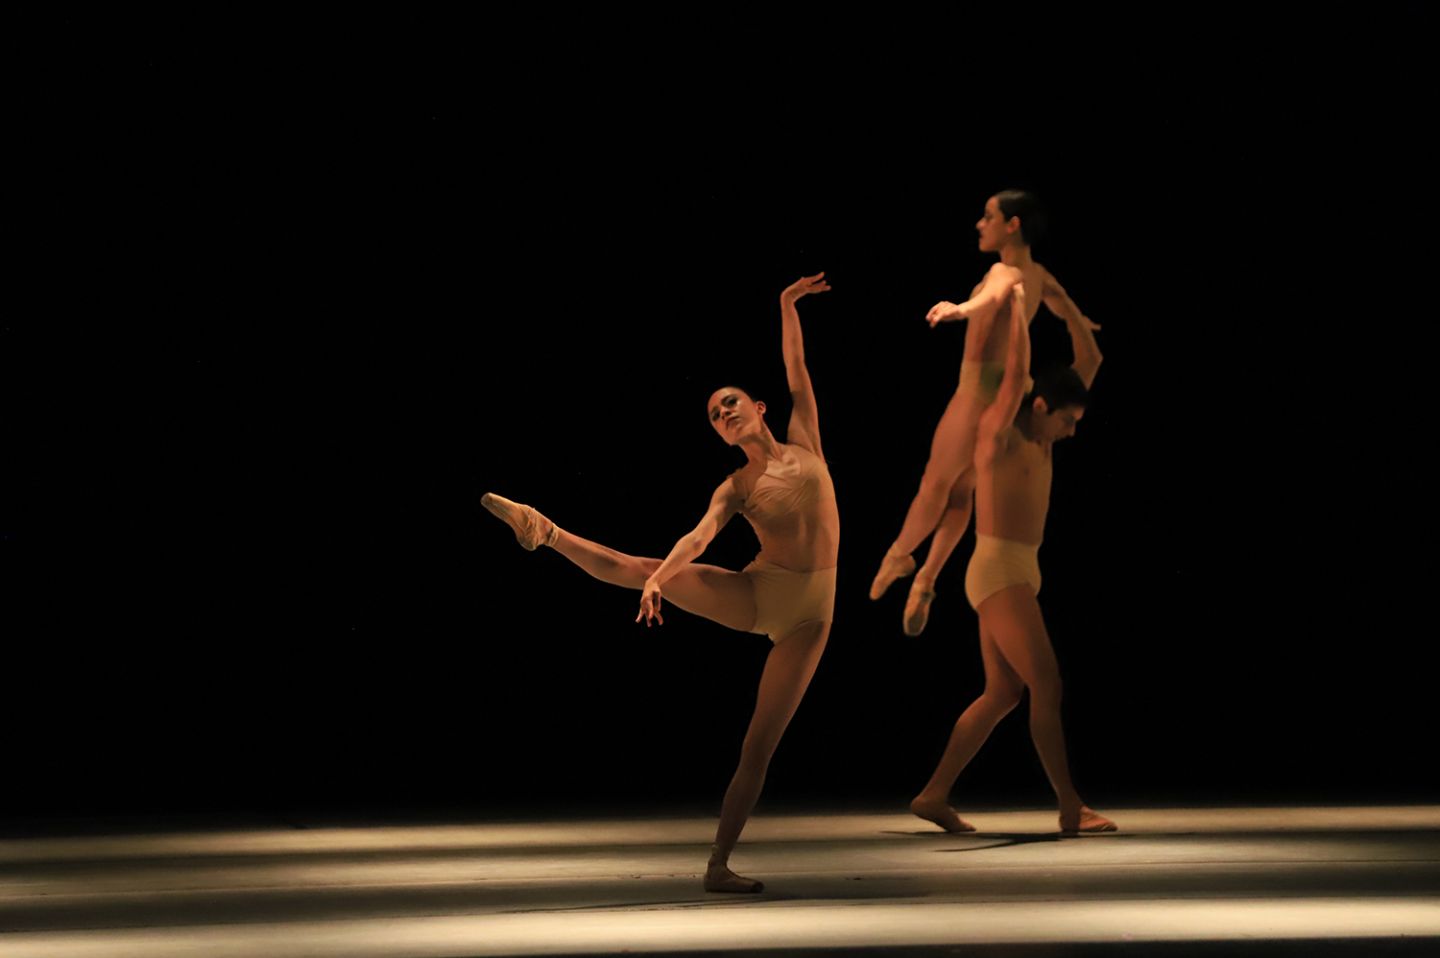 Presenta compañía de danza del Edoméx ’Con-concierto amor de humano’ en el centro cultural mexiquense bicentenario 